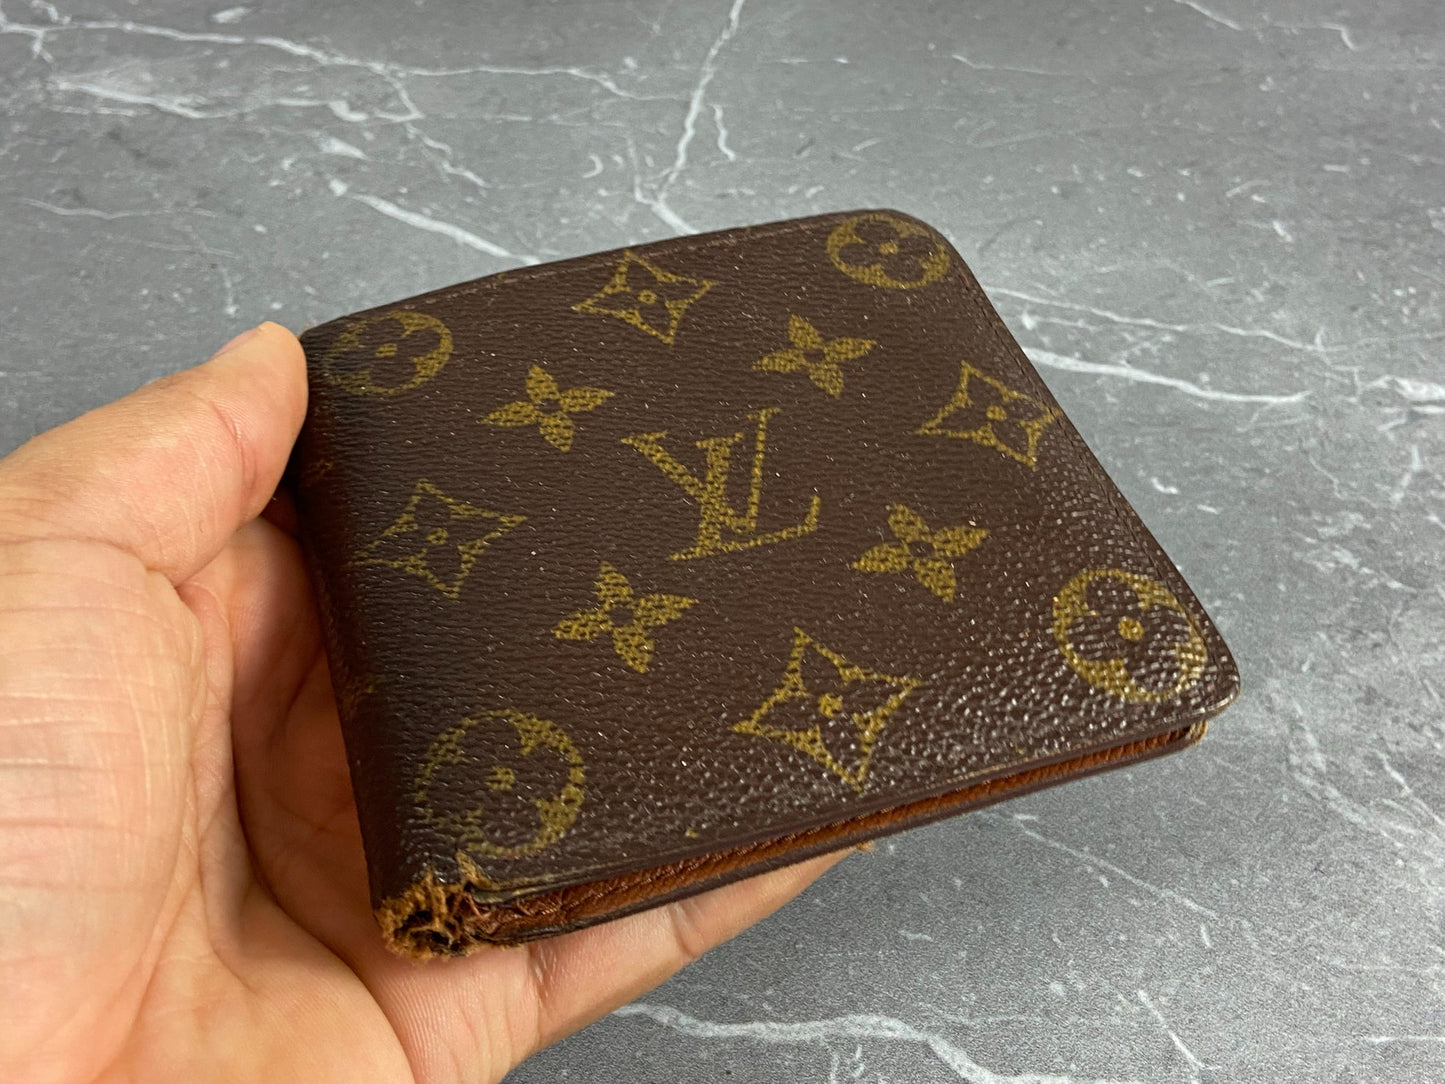 Louis Vuitton MARCO Marco wallet (M30795)